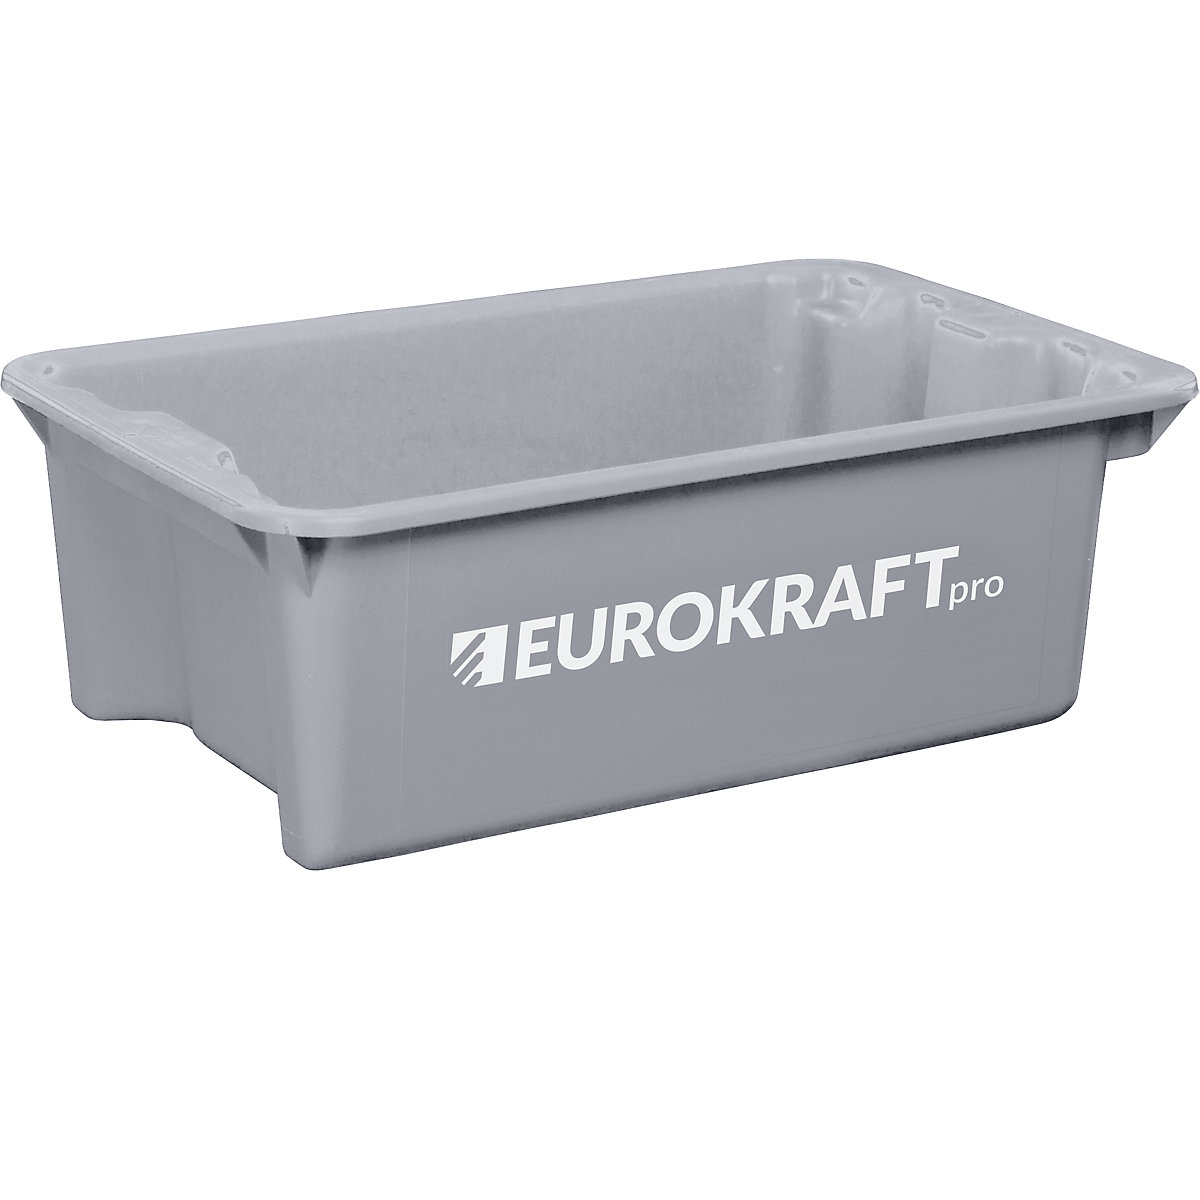 EUROKRAFTpro – Obrotowy pojemnik do ustawiania w stos z polipropylenu dopuszczonego do kontaktu z żywnością, poj. 34 l, opak. 3 szt., ścianki i dno zamknięte, szare